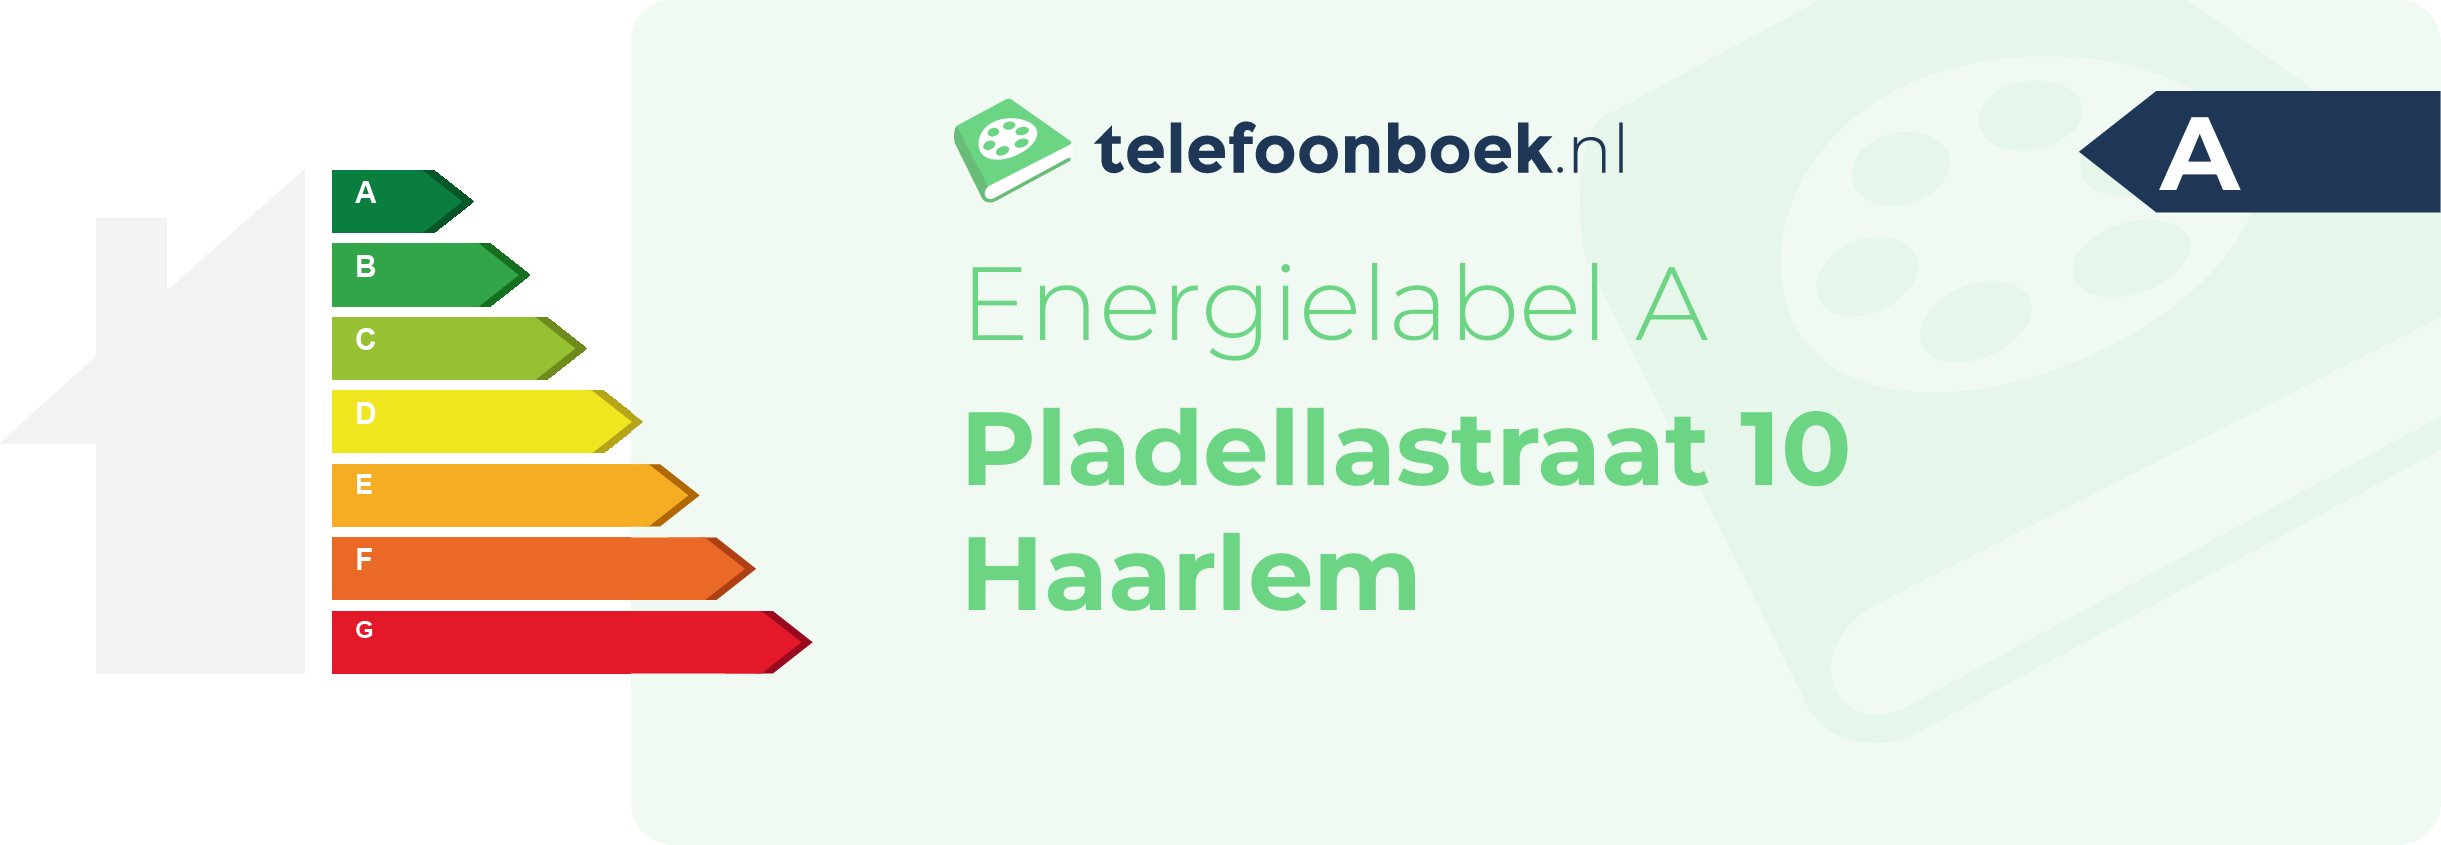 Energielabel Pladellastraat 10 Haarlem